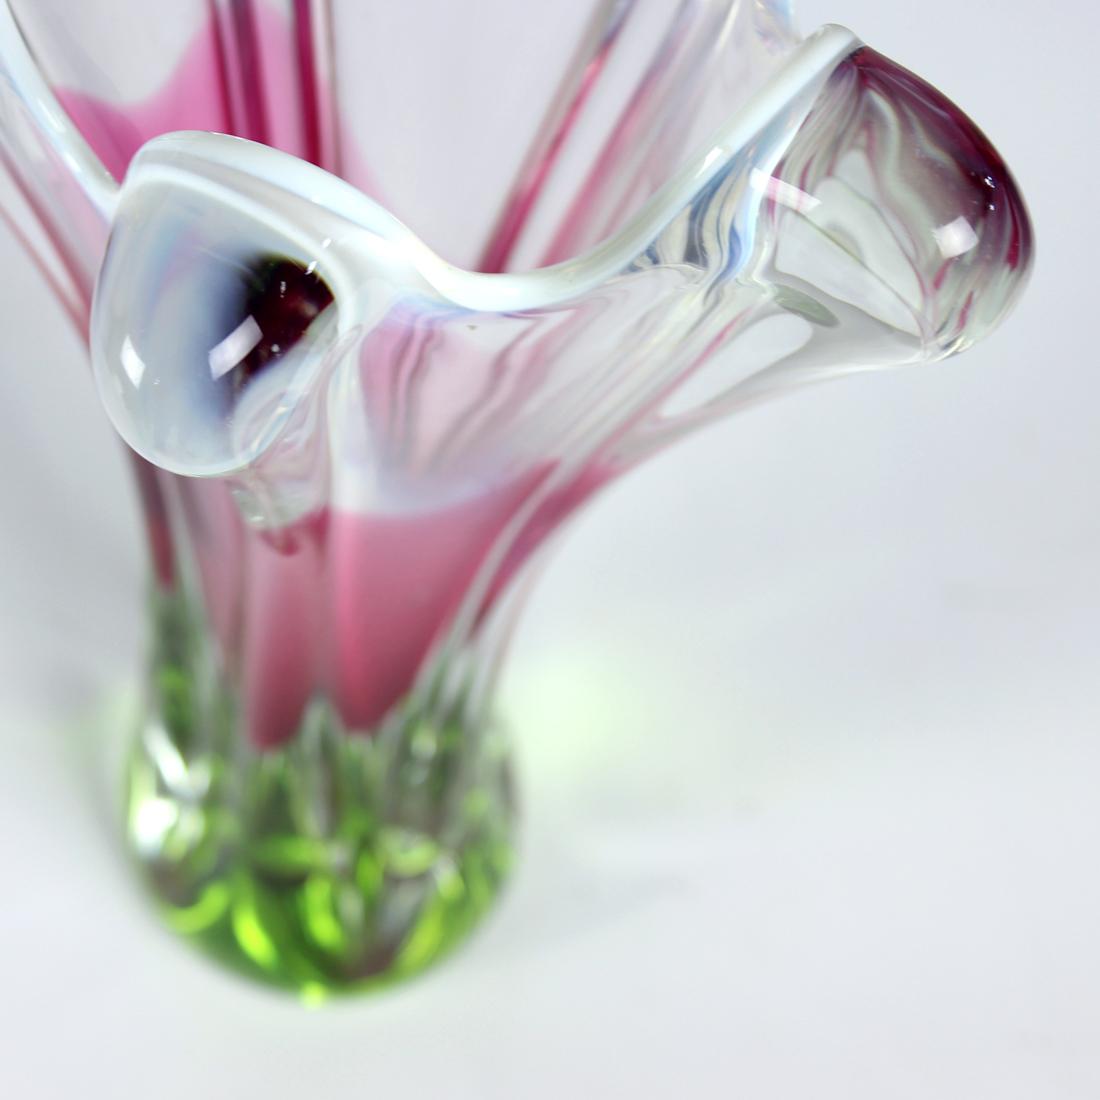 Czech 1960s Art Glass Vase By Josef Hospodka, Chribska Glass For Sale